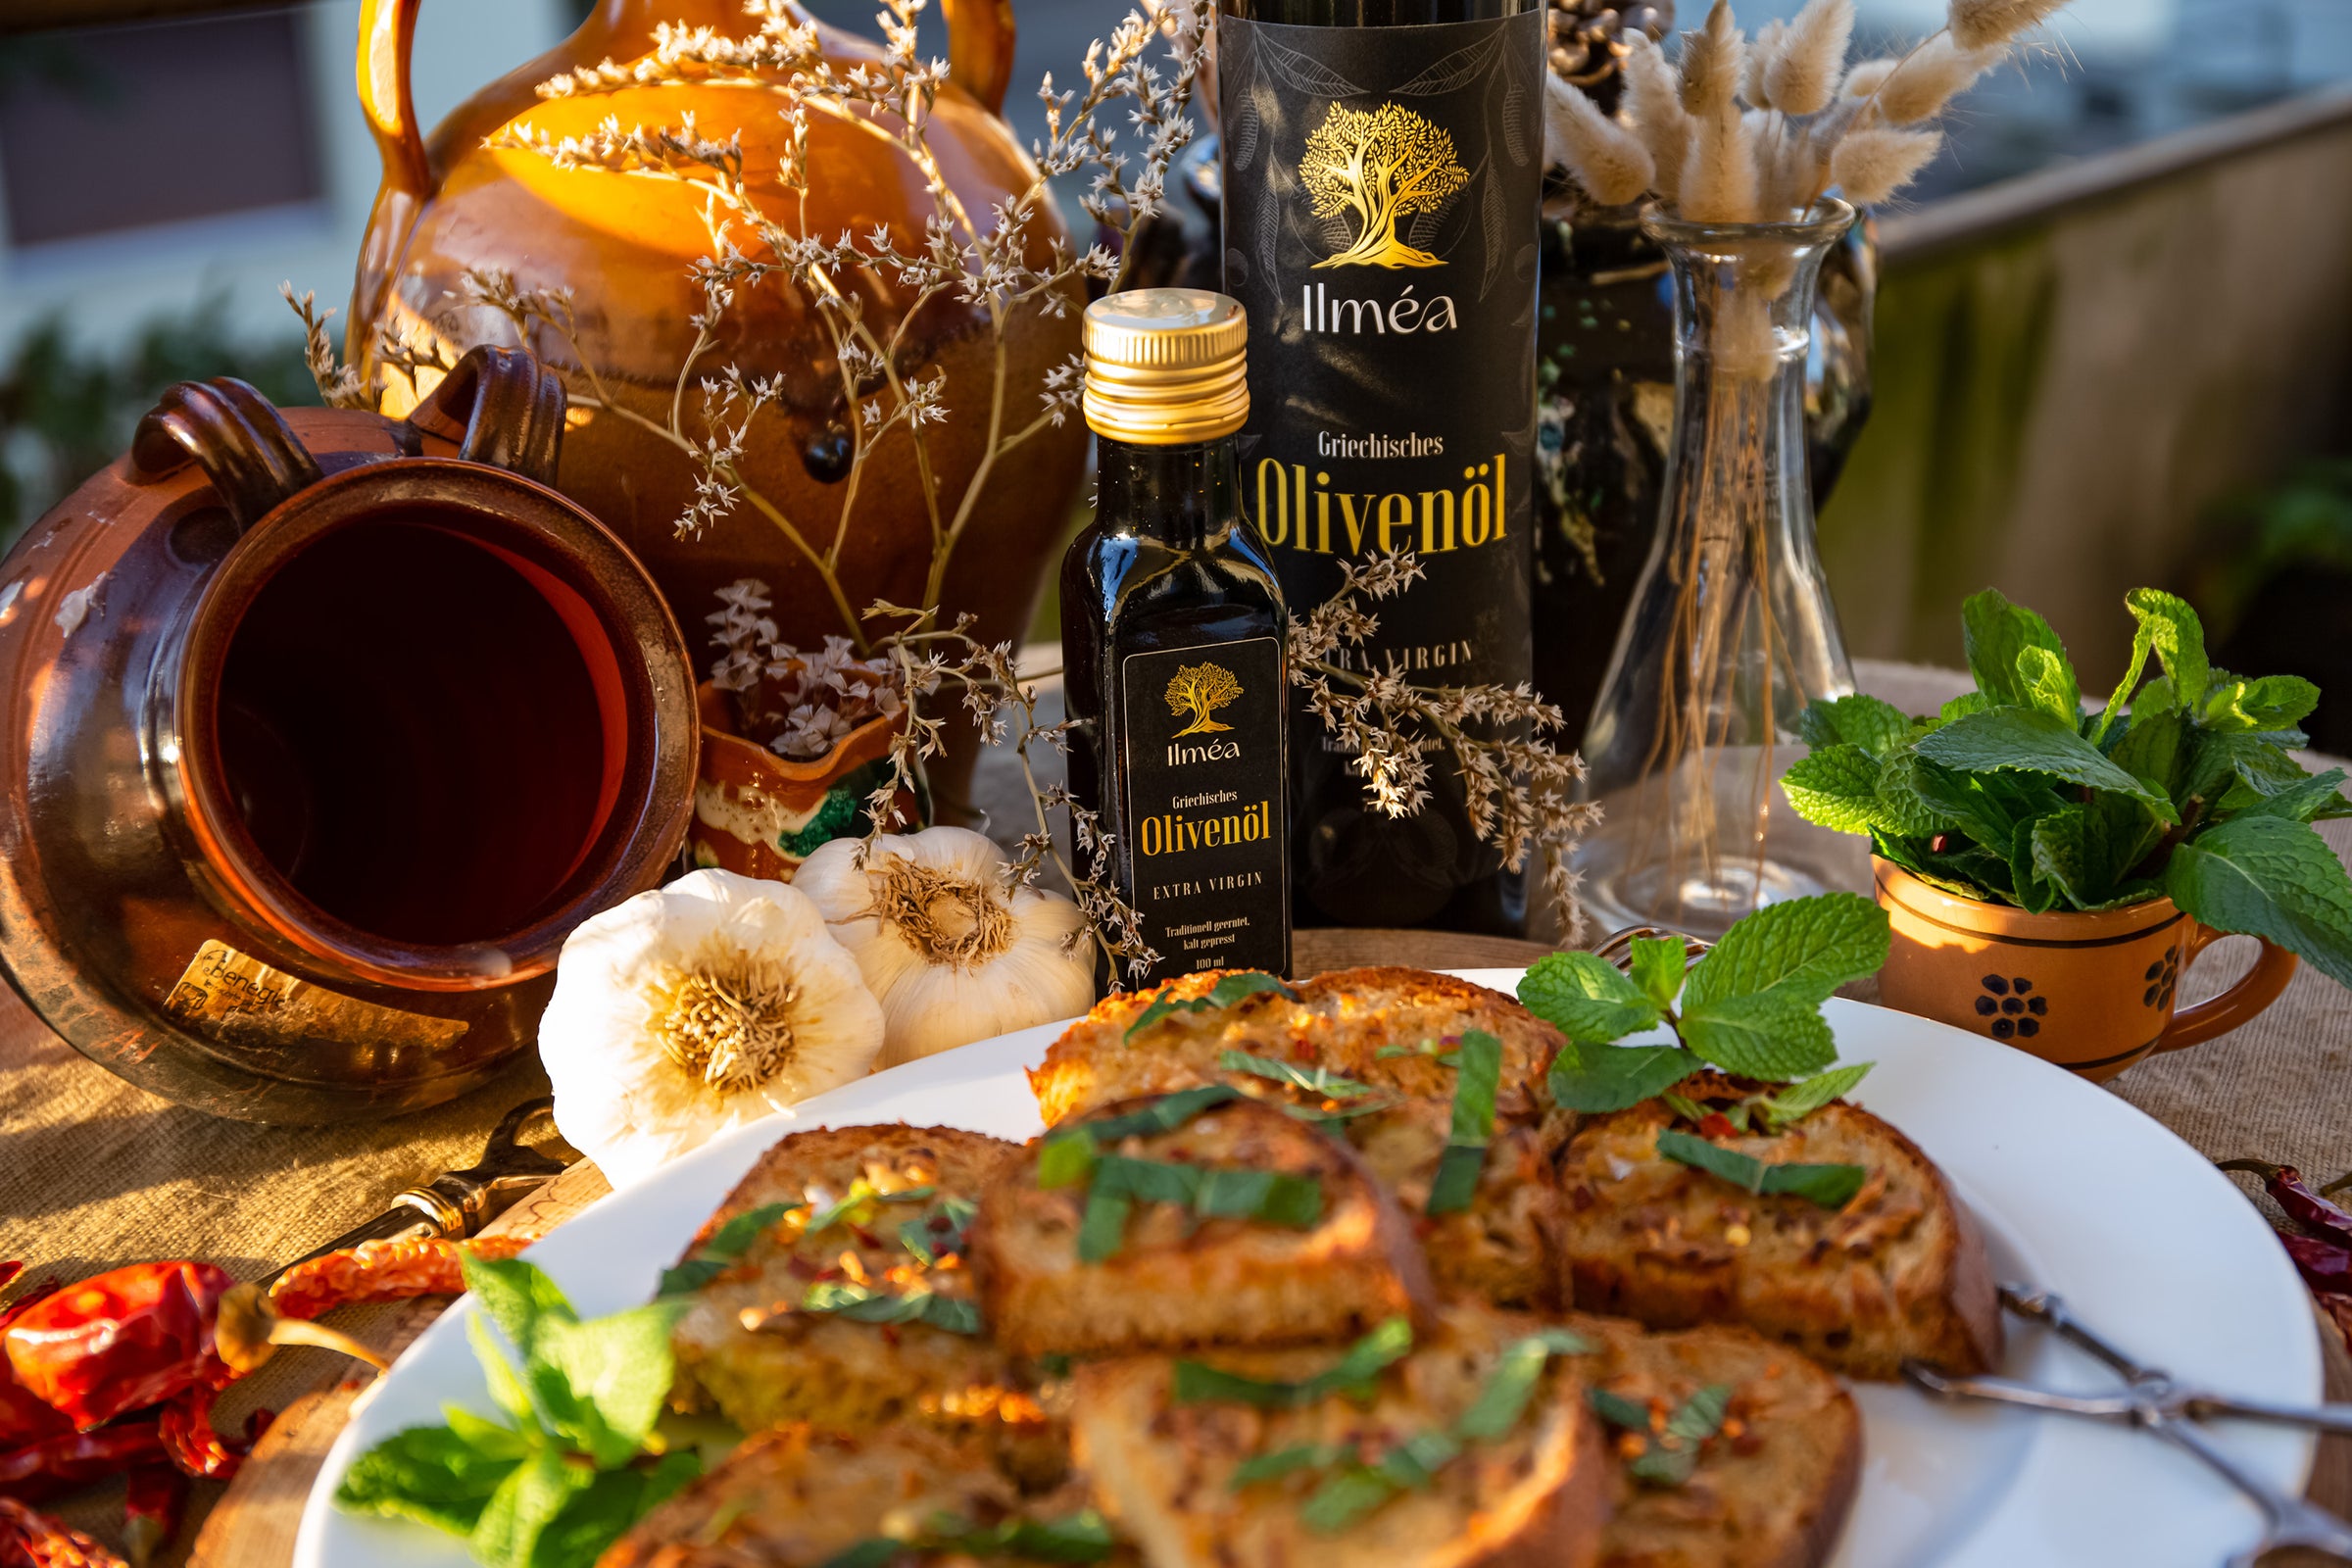 Ilmea Olivenöl in der Abendsonne mit Mediterranem Gericht und feinem Knoblauch.